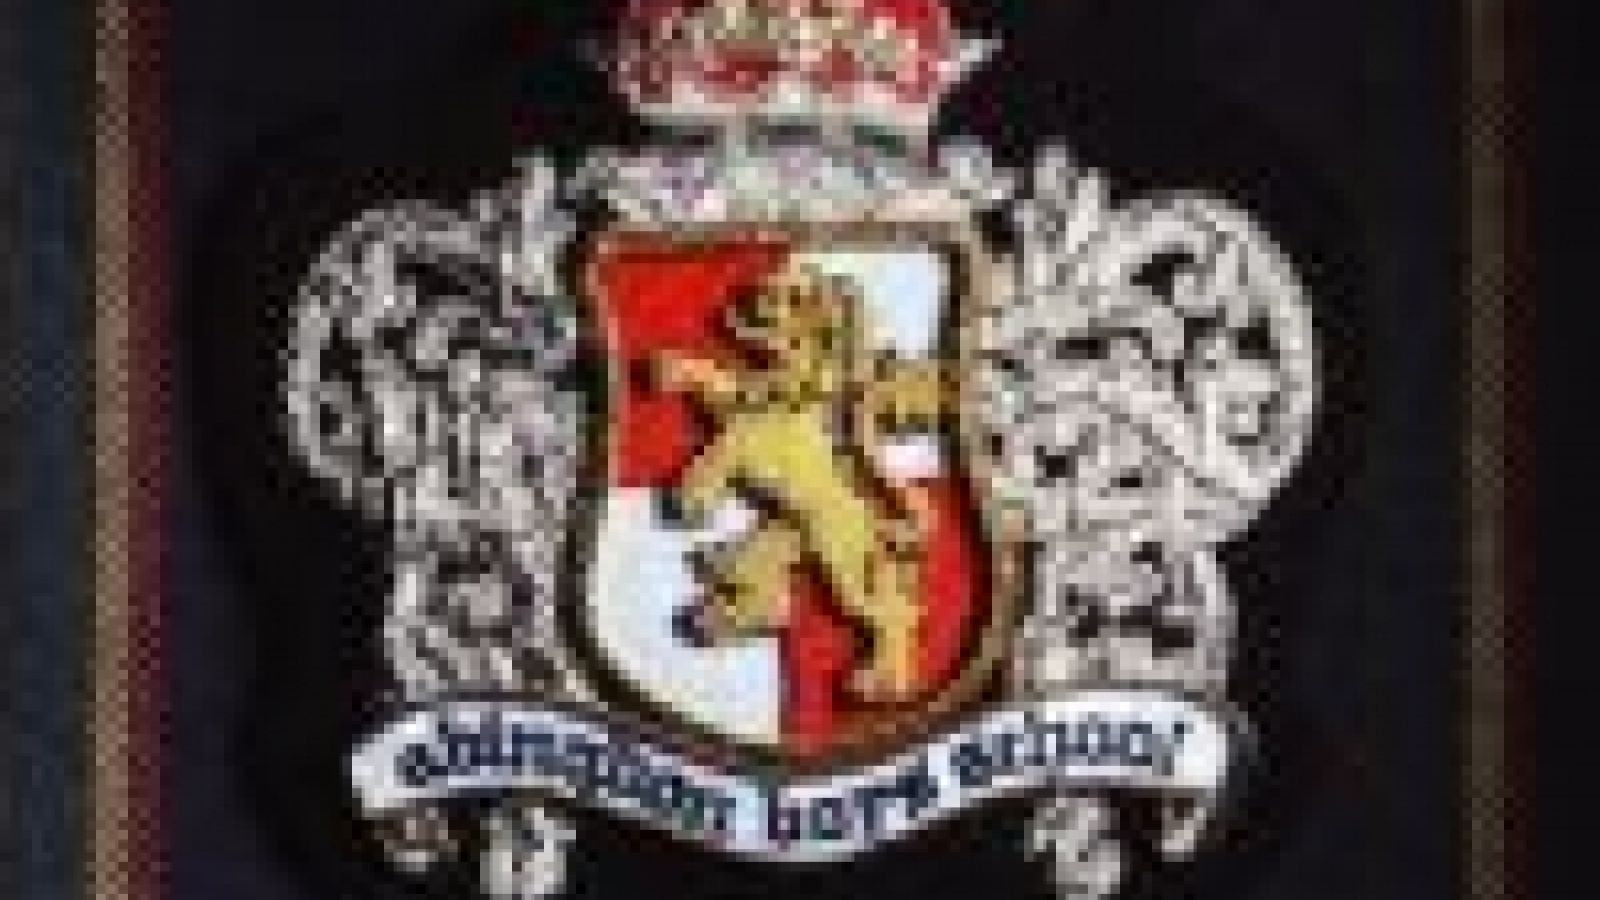 abingdon boys school - abingdon boys school © 